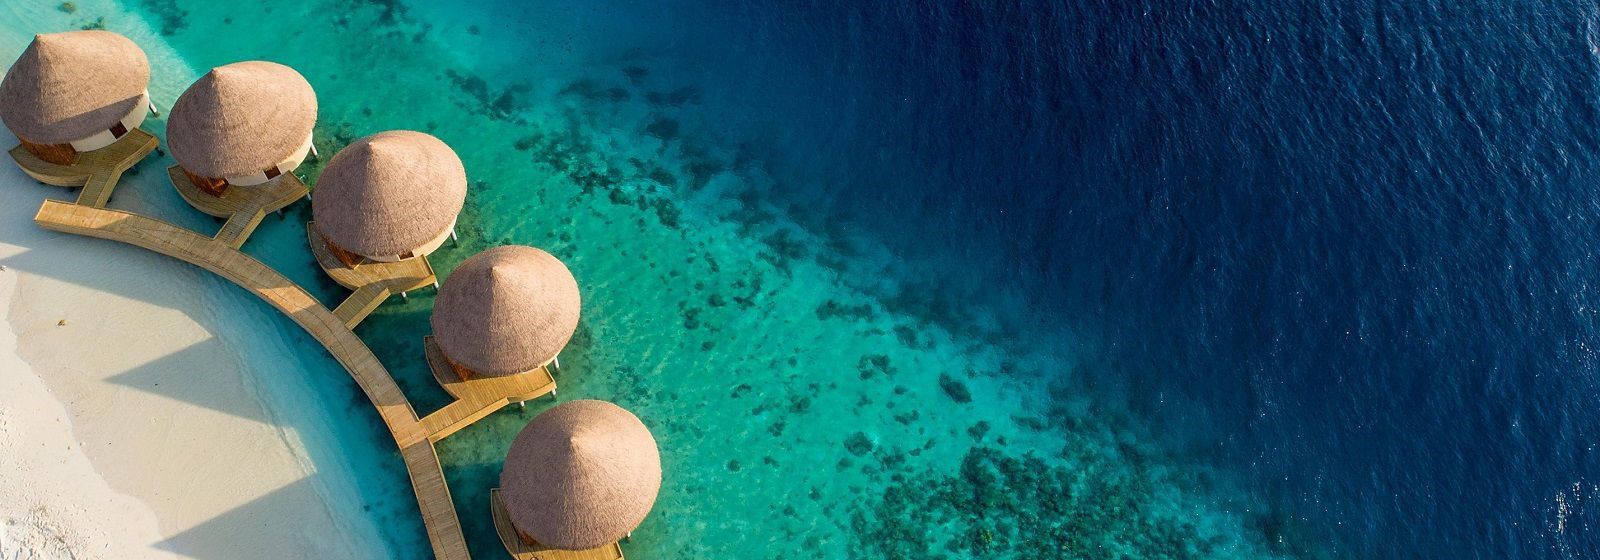 InterContinental Maldives Maamunagau Resort- aerial view